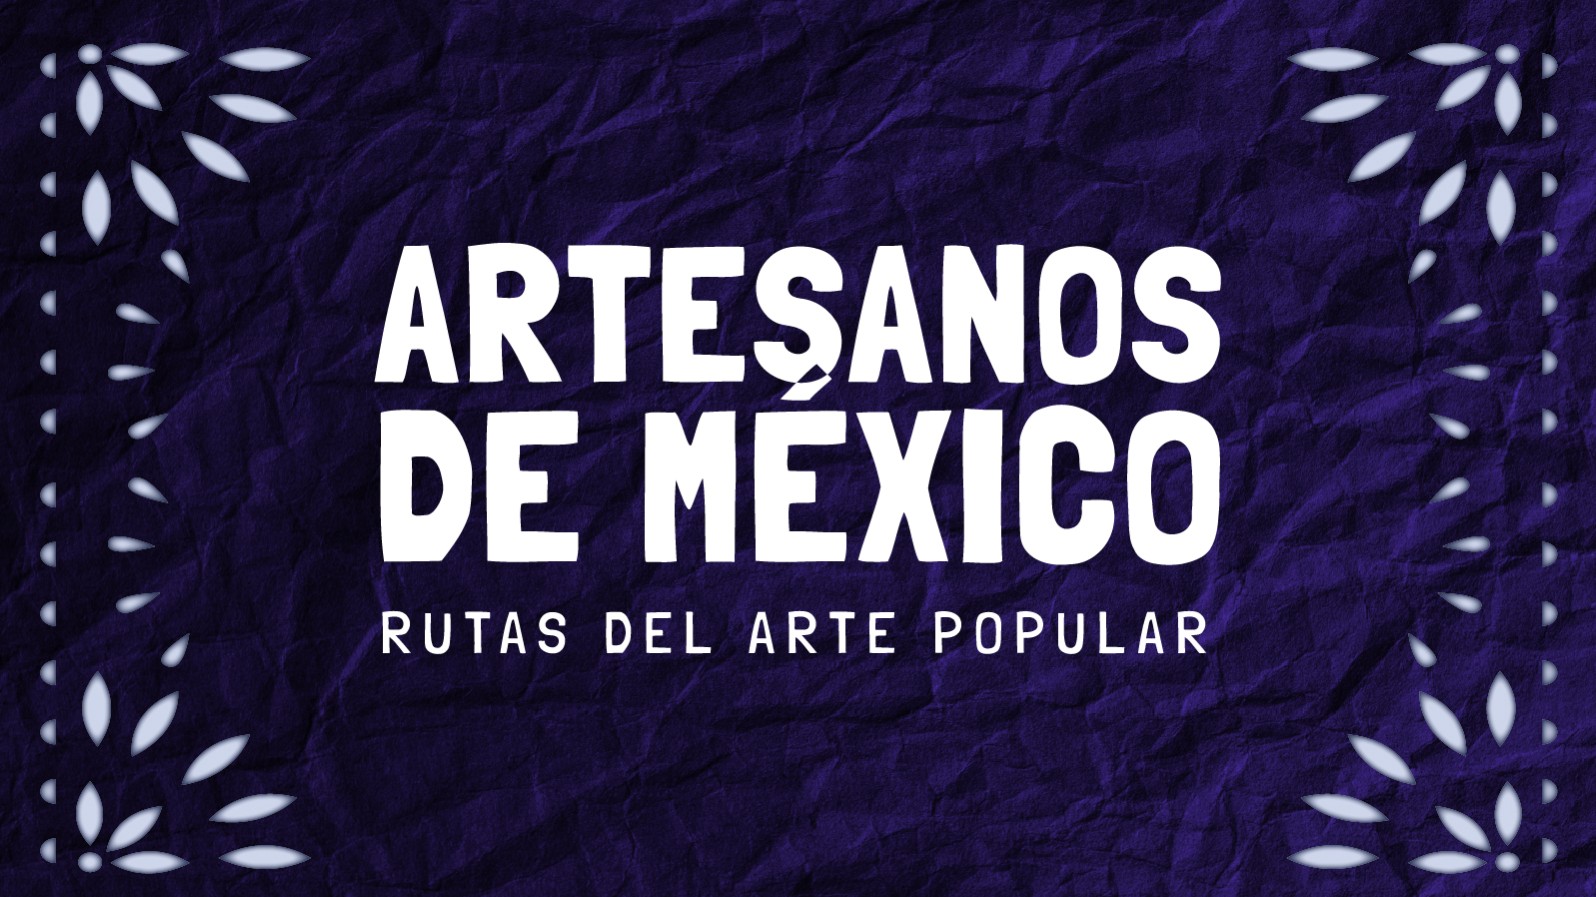 Artesanos de México: Rutas del arte popular